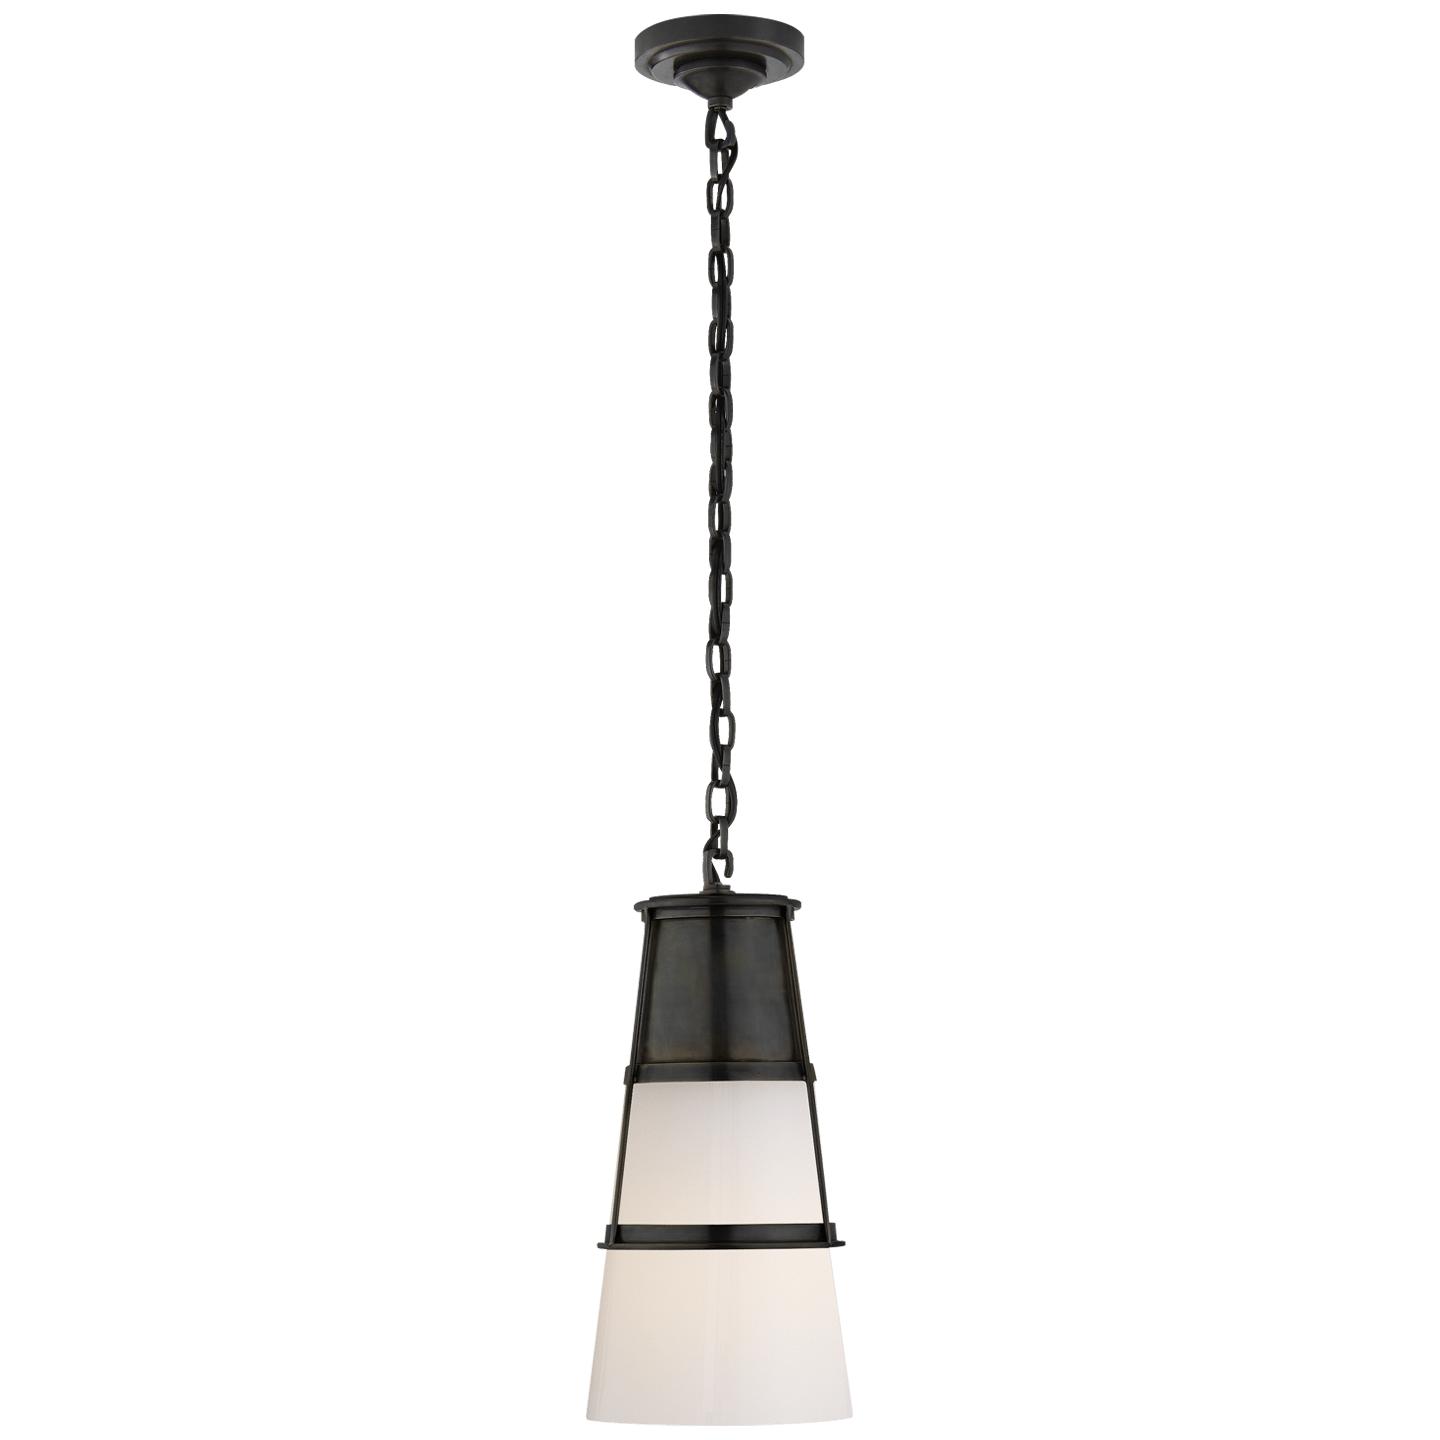 Купить Подвесной светильник Robinson Medium Pendant в интернет-магазине roooms.ru